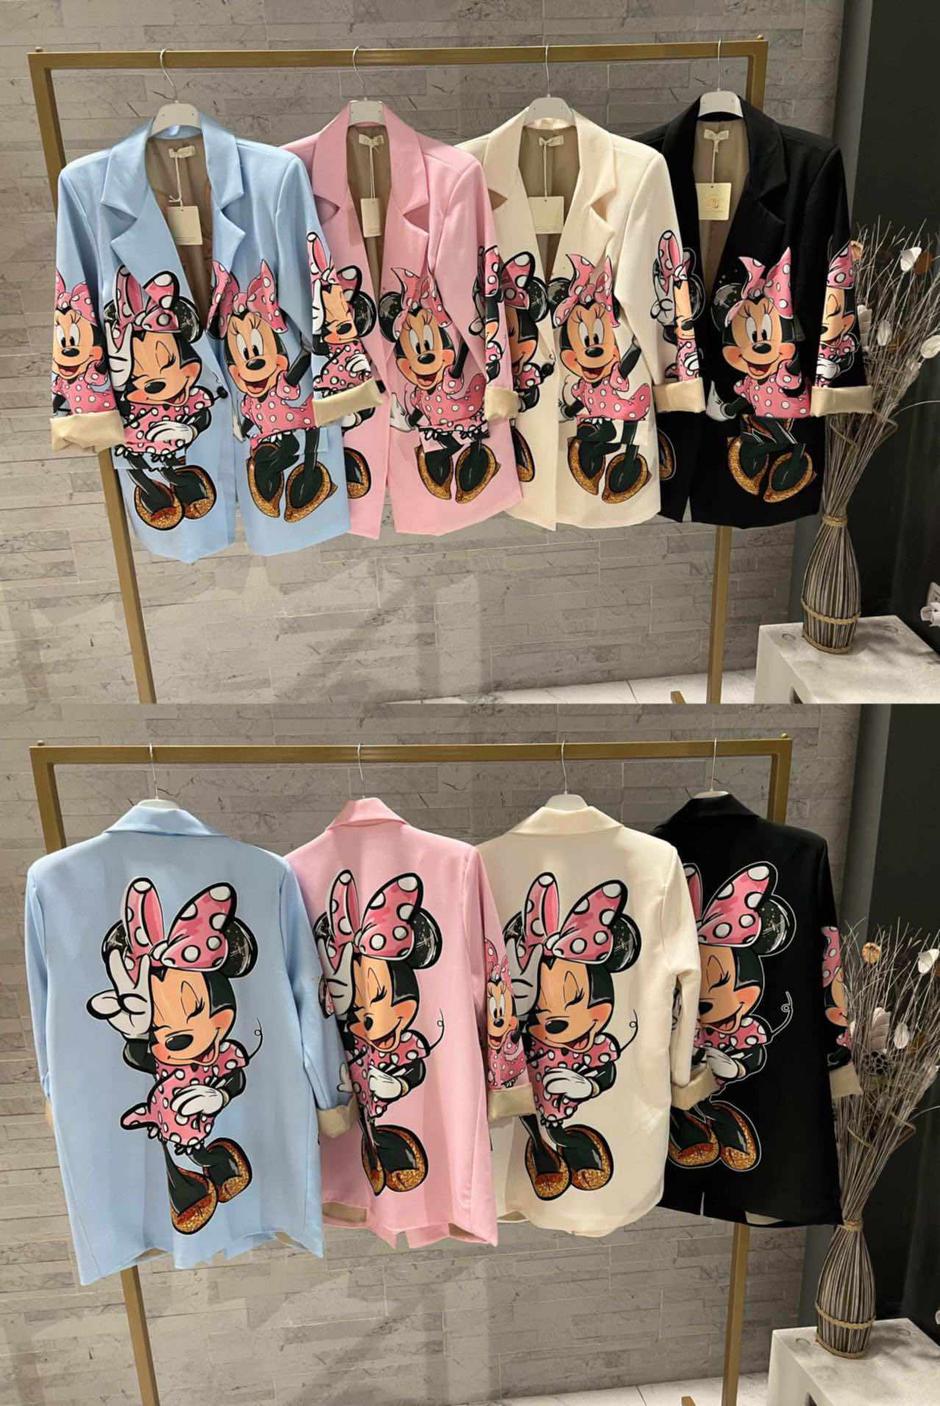 Foto: Superkupi.hr, Minnie Mouse sakoi u raznim bojama | Autor: Superkupi.hr